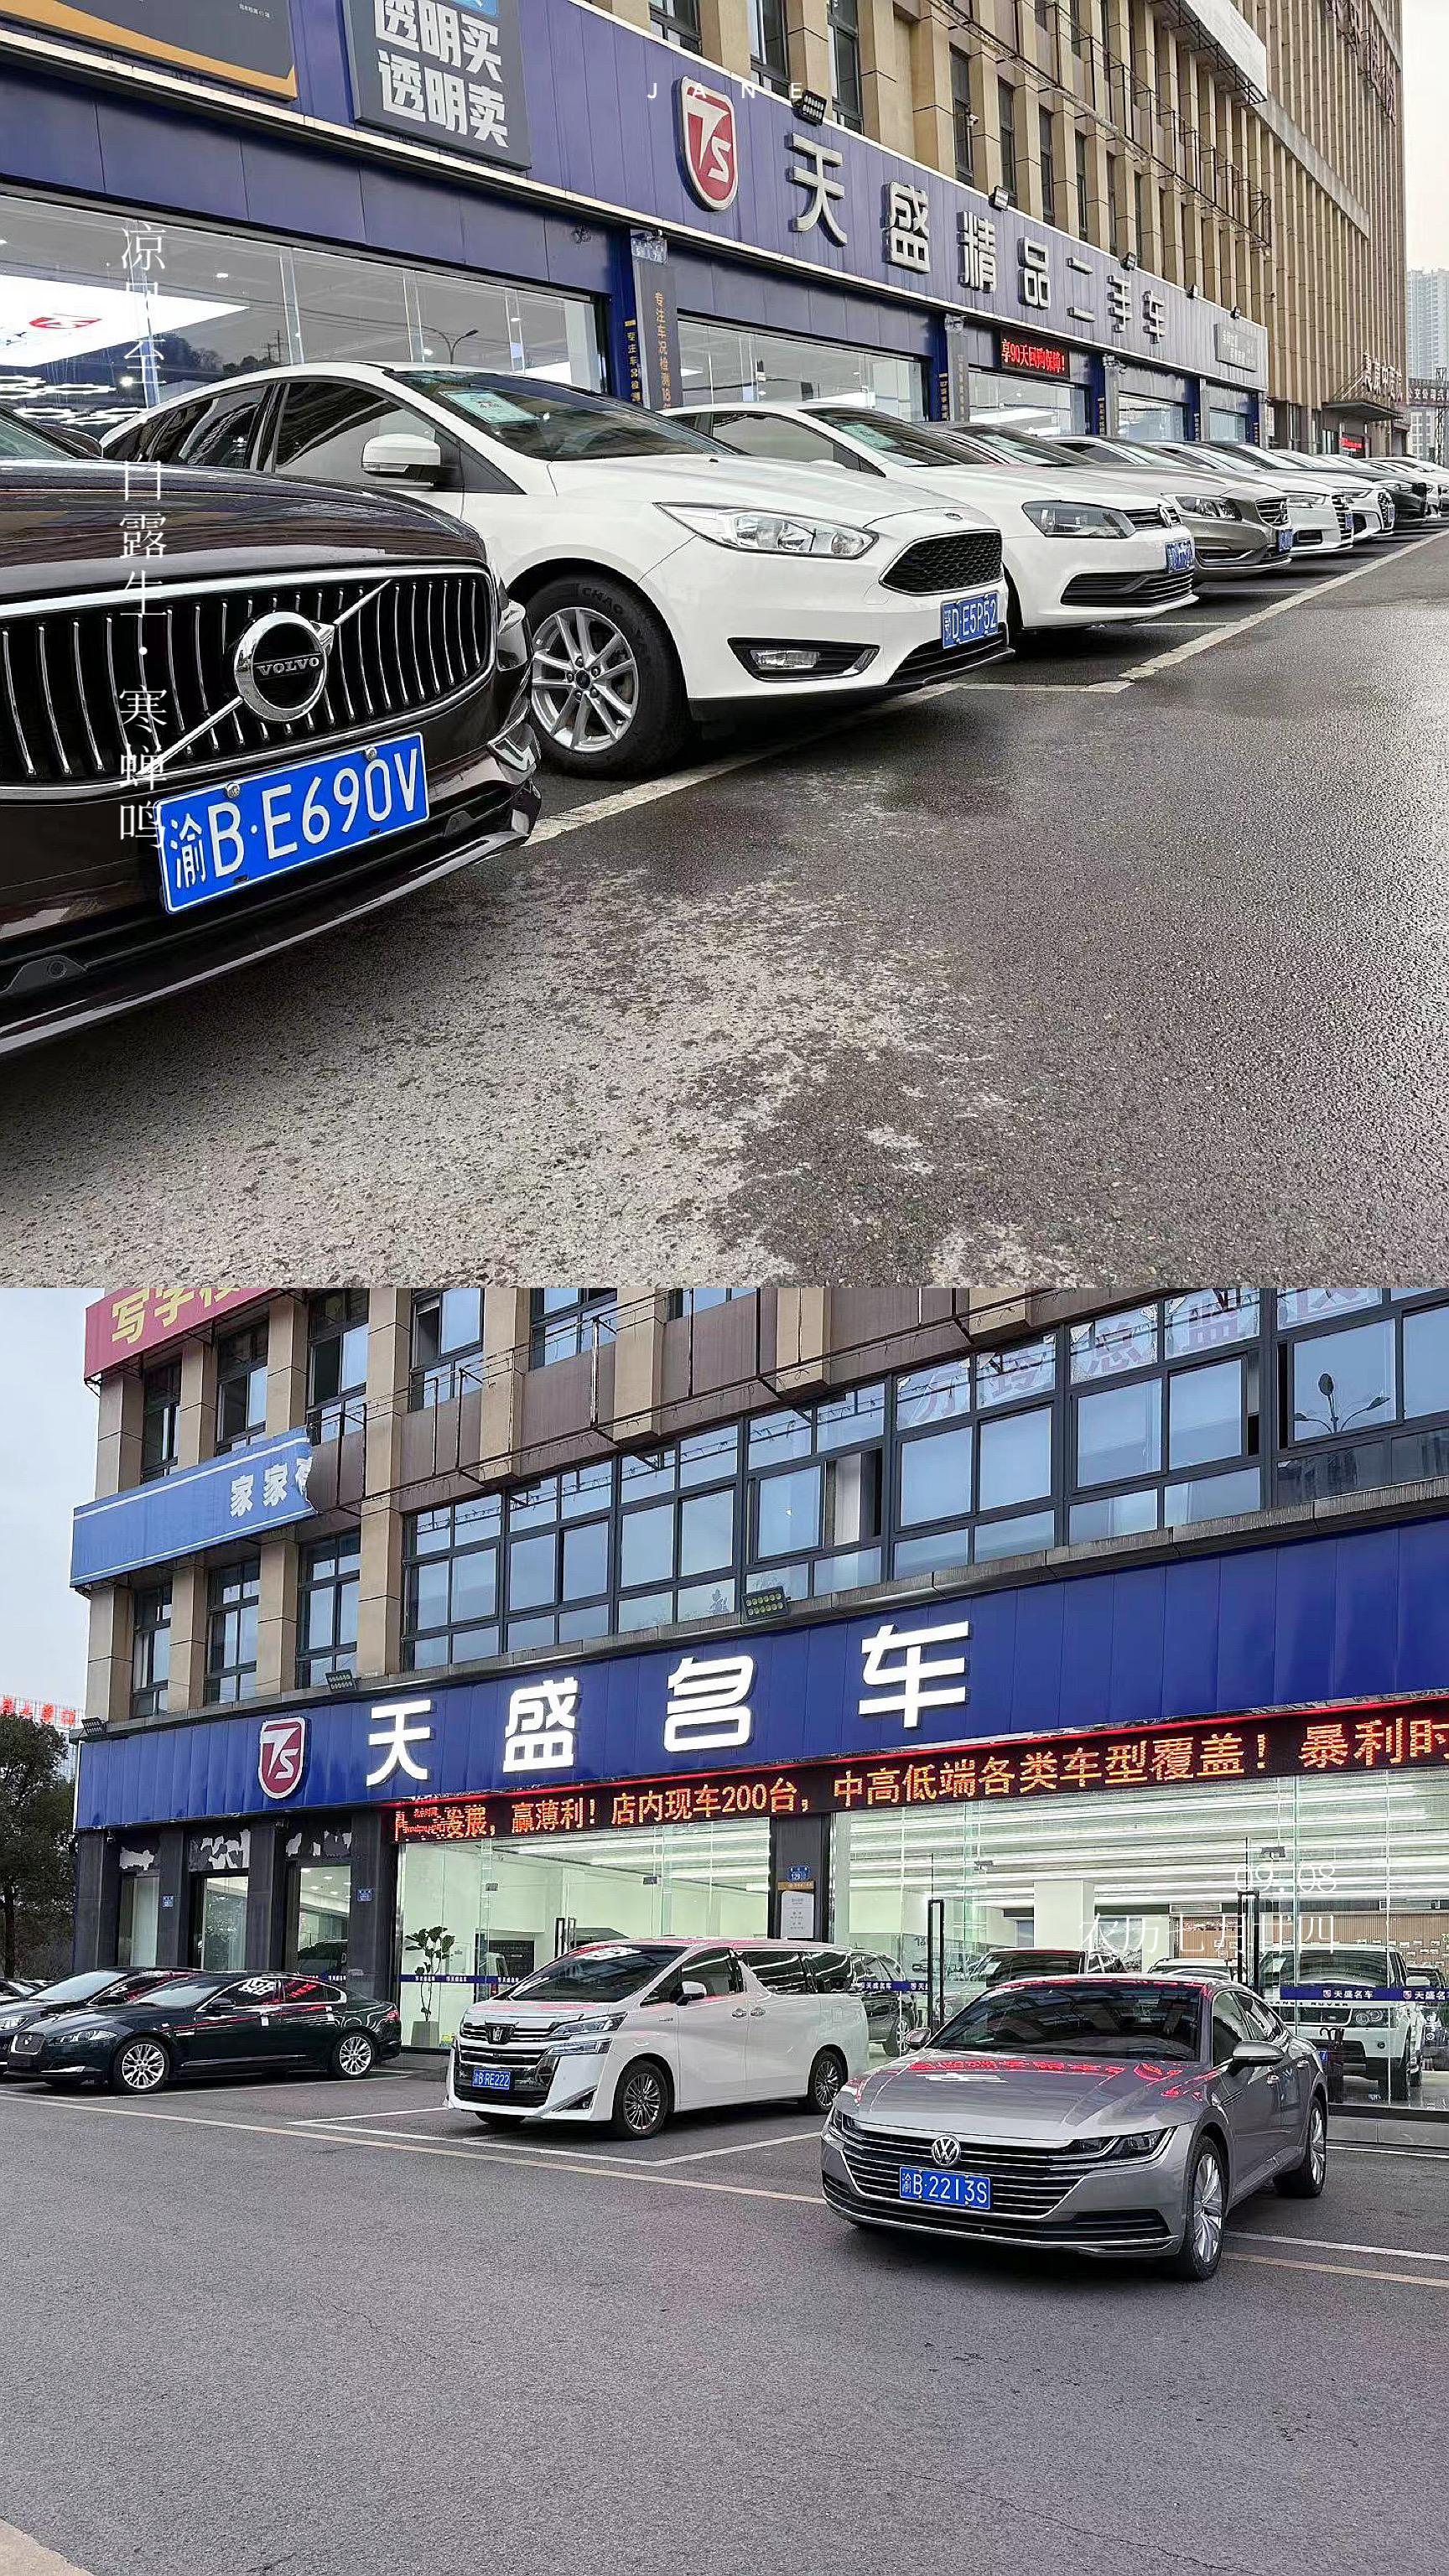 重庆天盛靓车二手车市场管理有限公司